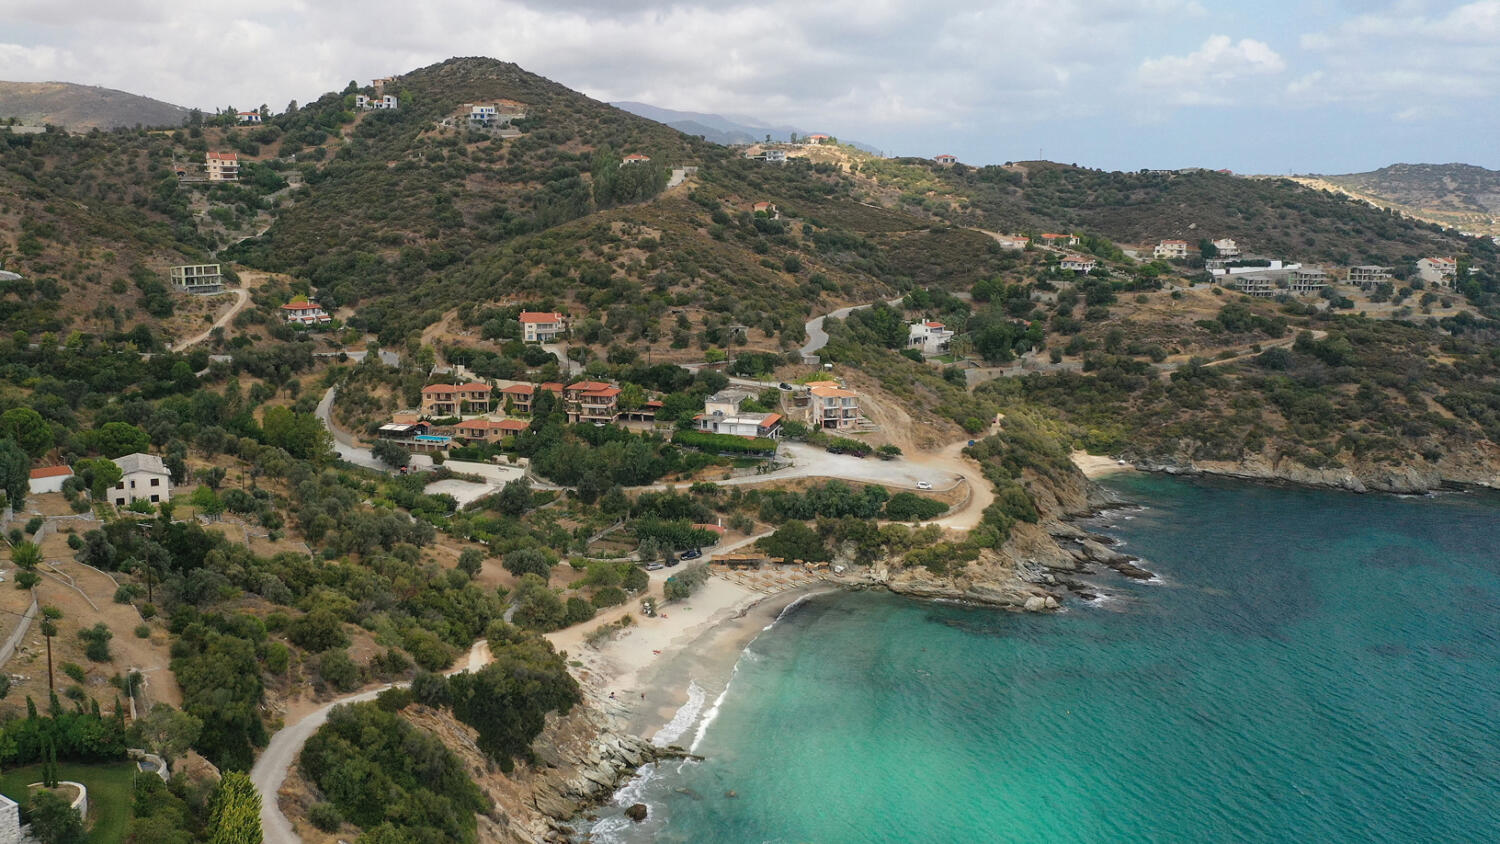 Παραλία Κλιμάκι, χωριό Άγιοι Απόστολοι. Φωτογραφία: ©Βασίλης Συκάς, για τον Δήμο Κύμης-Αλιβερίου